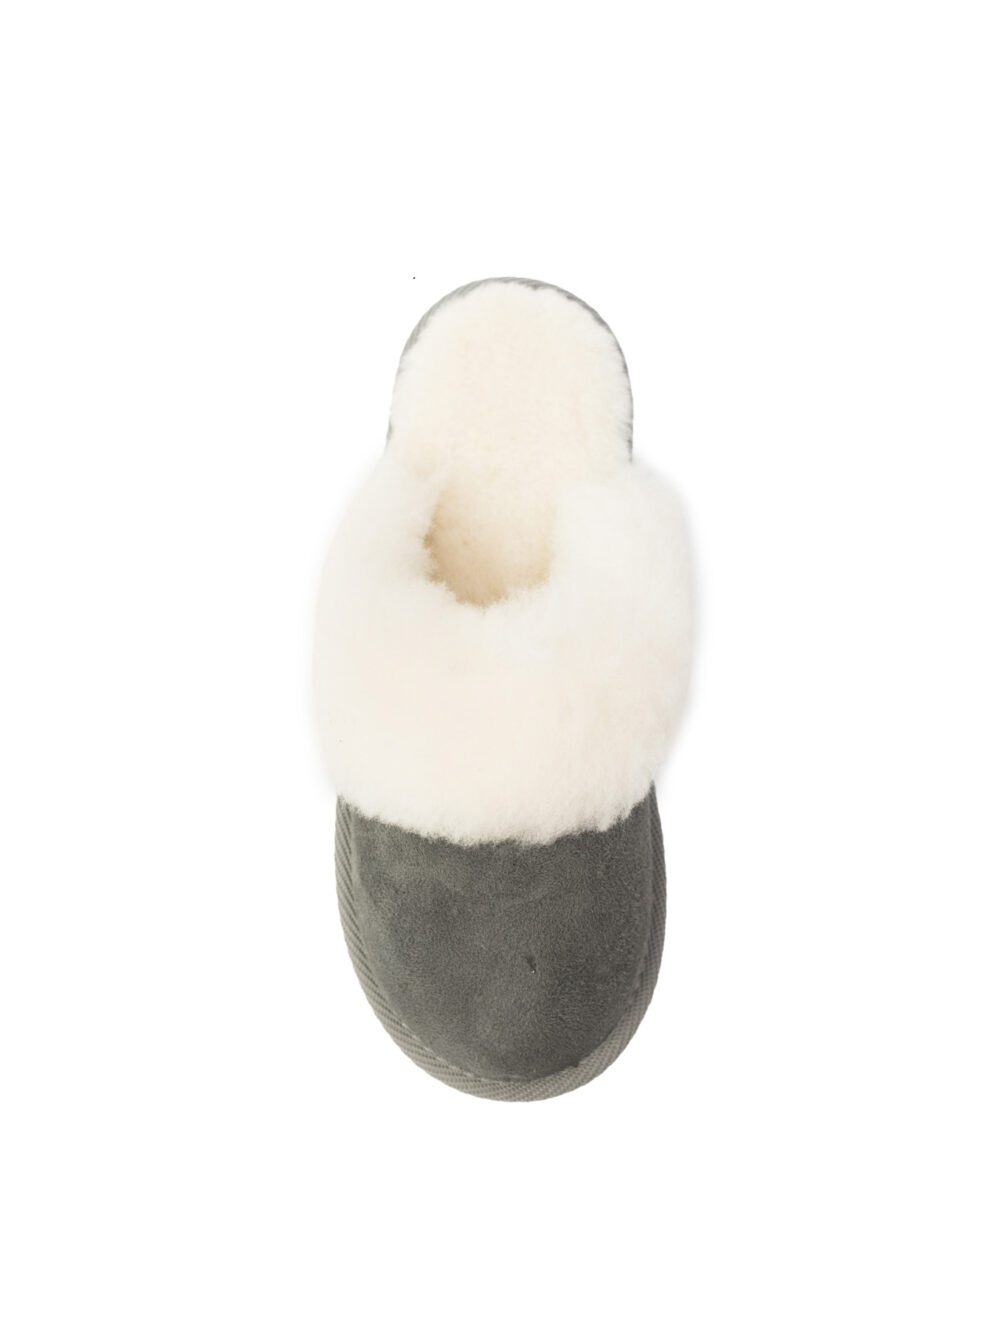 Women’s Slippers Lana Grey Accessories Producent owczych skór dekoracyjnych | Tannery Sheepskin | KalSkór 5